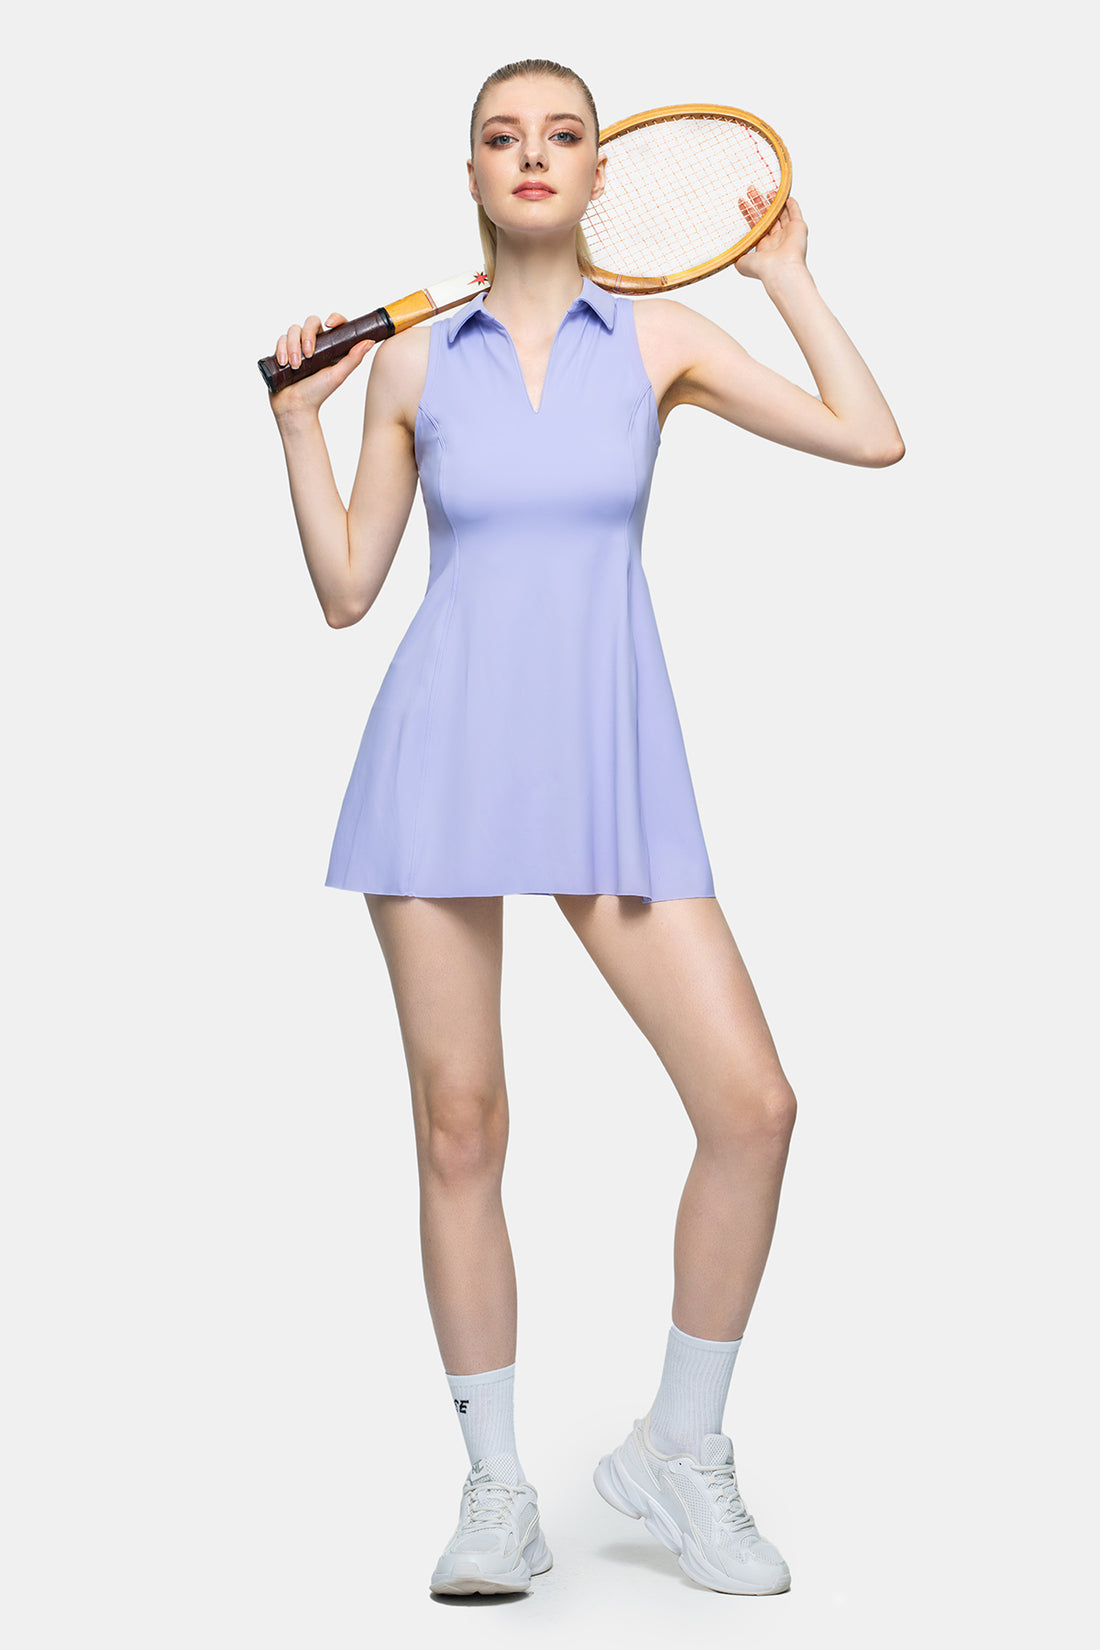 Polo Collar Tennis Dress with V-Neck